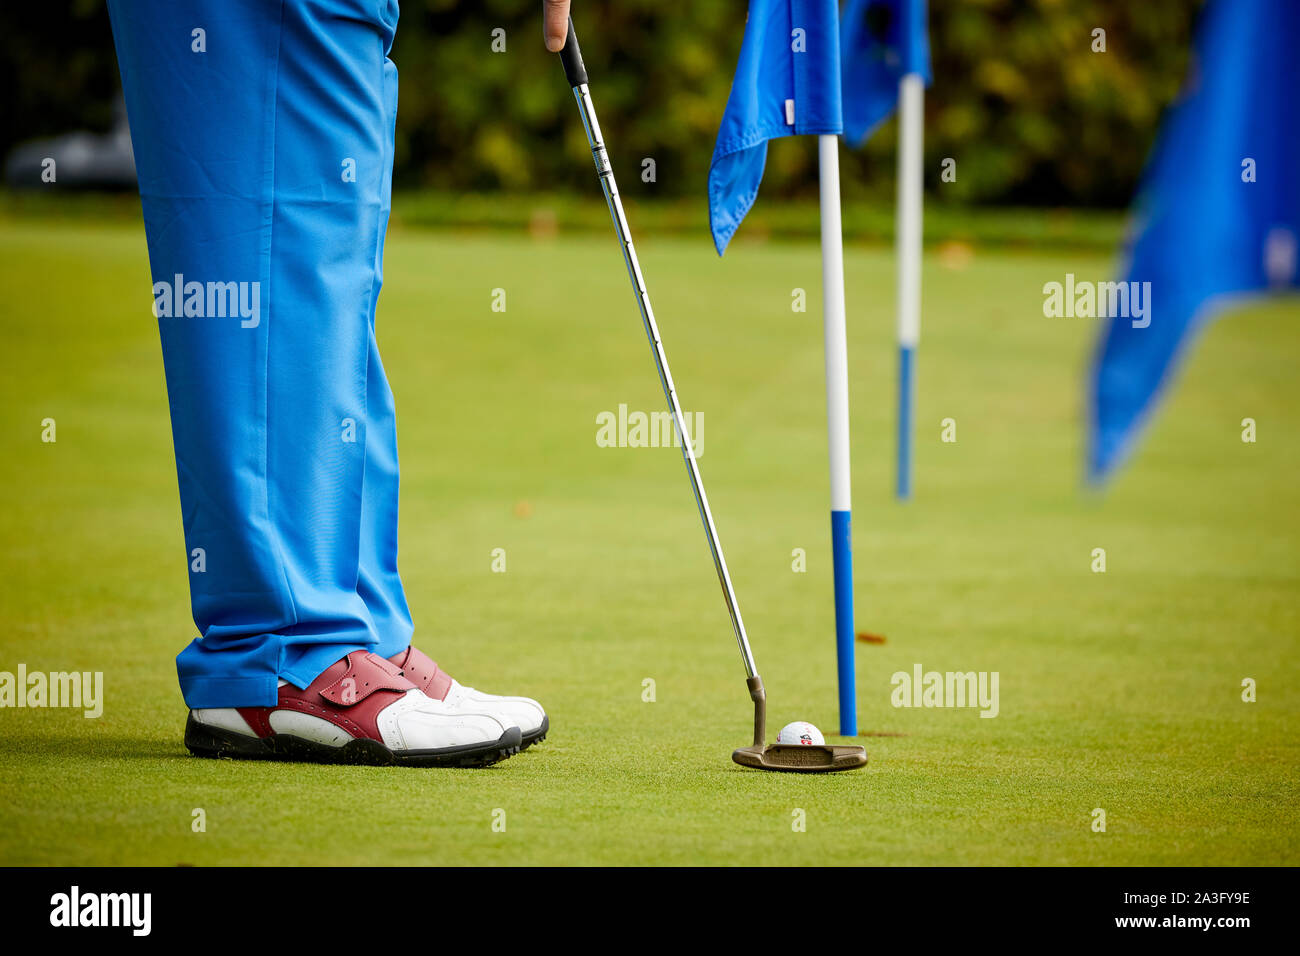 Golf jouer au golf sur le putting practice green Banque D'Images